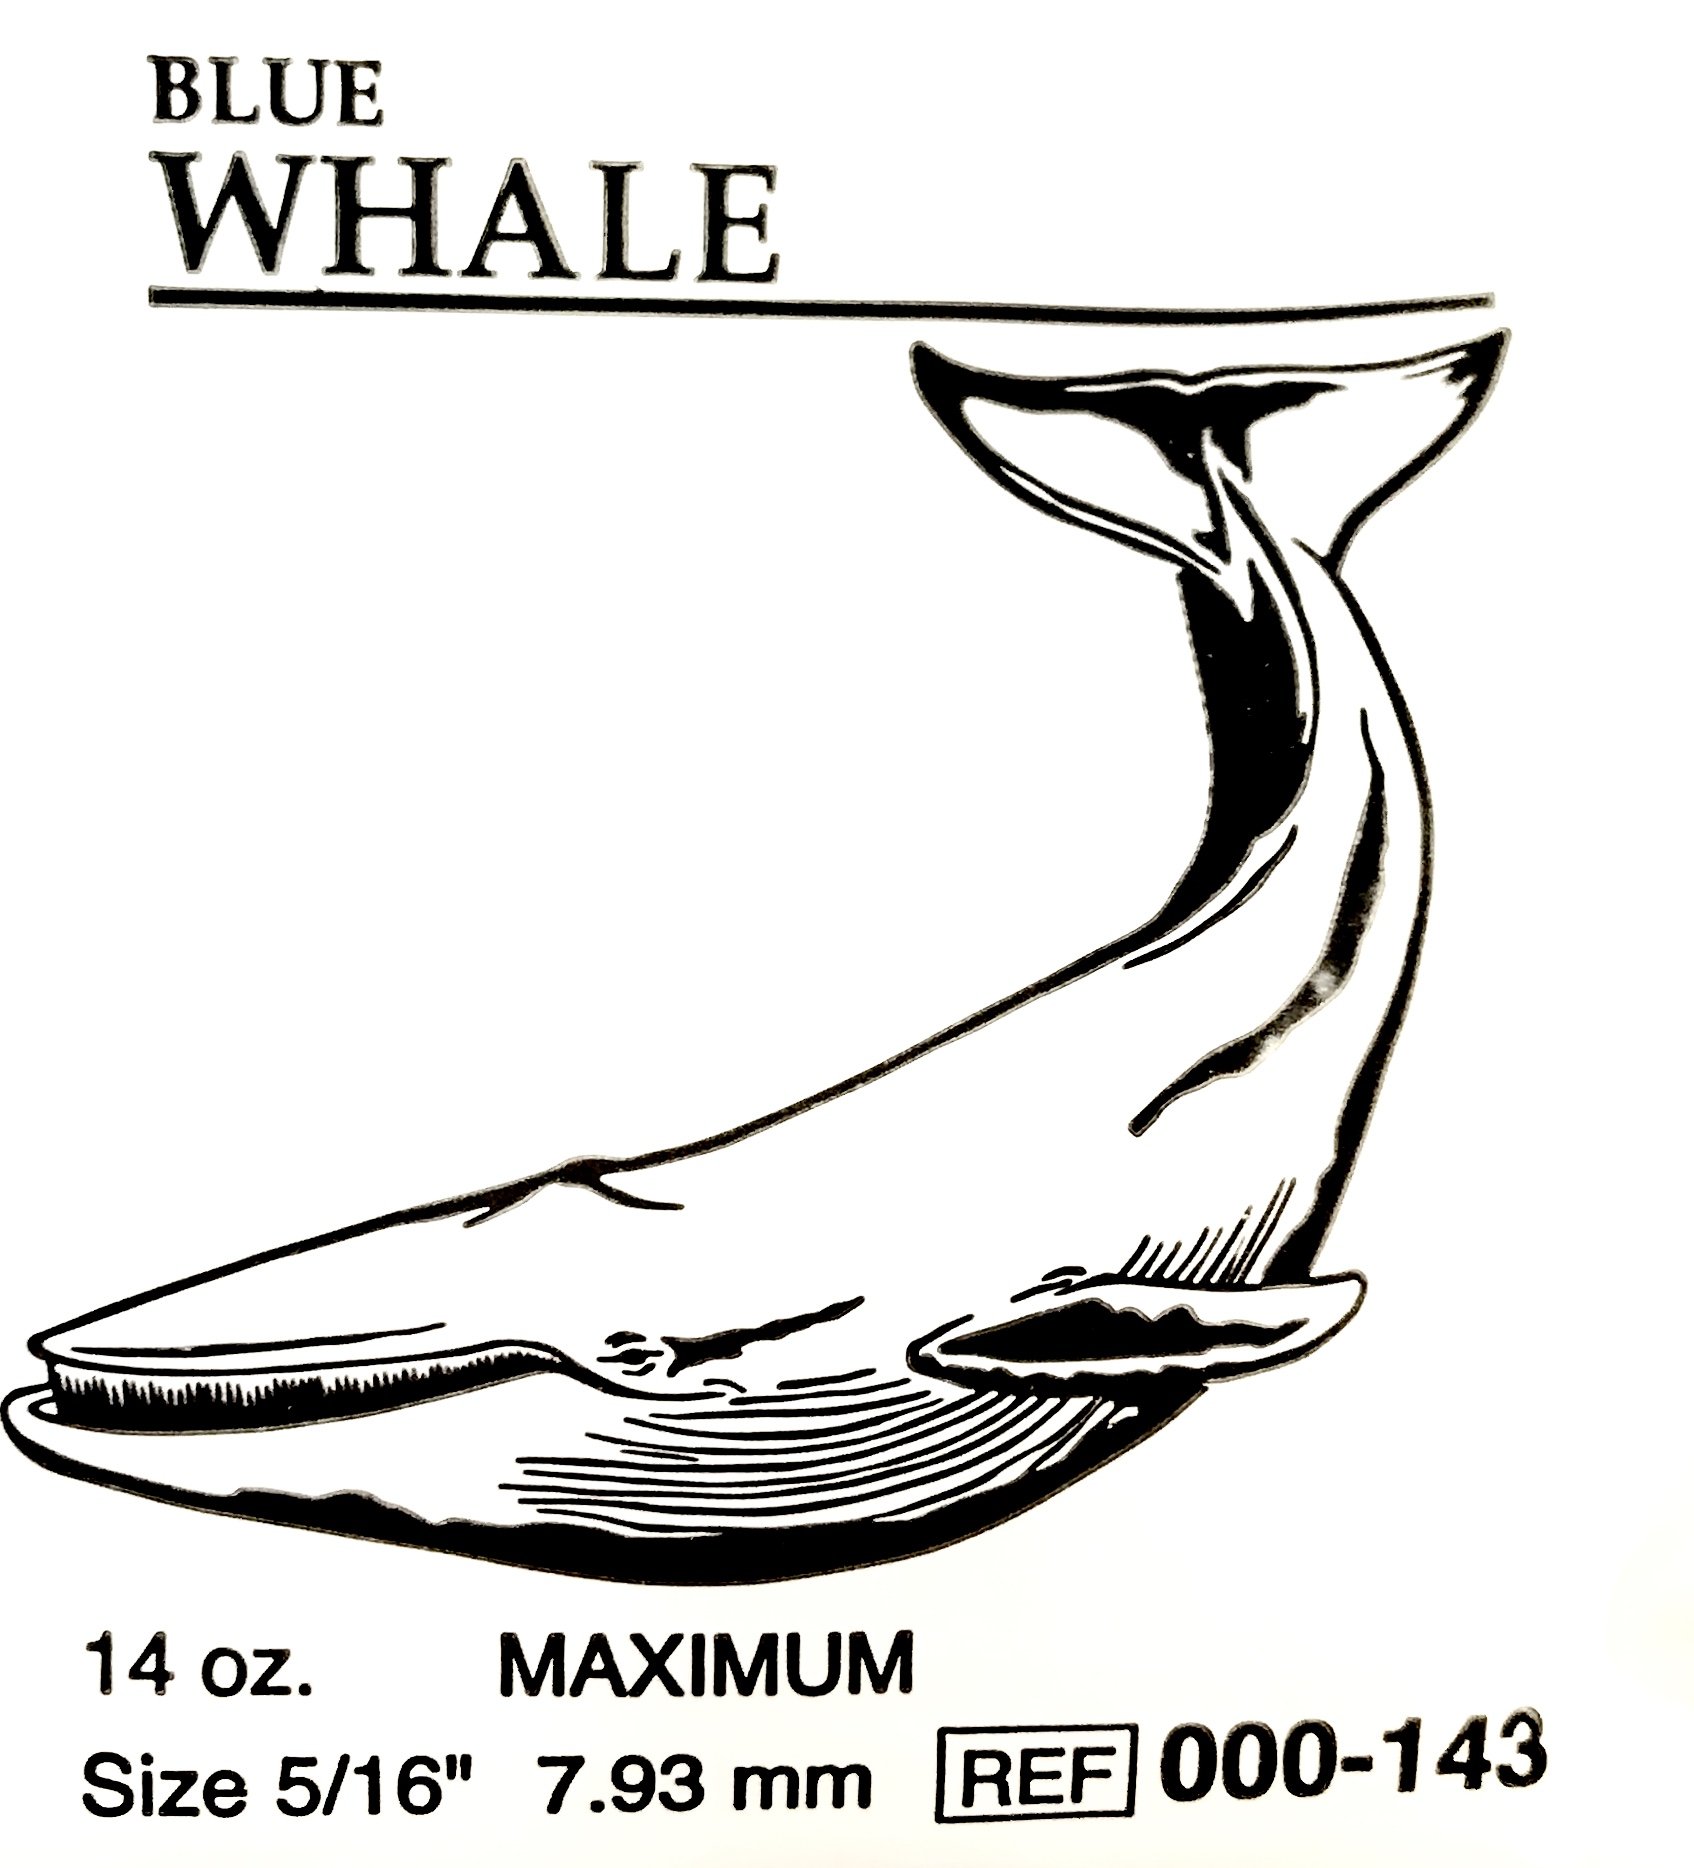 LIGAS EXTRAORALES 14oz 5/16 blue whale